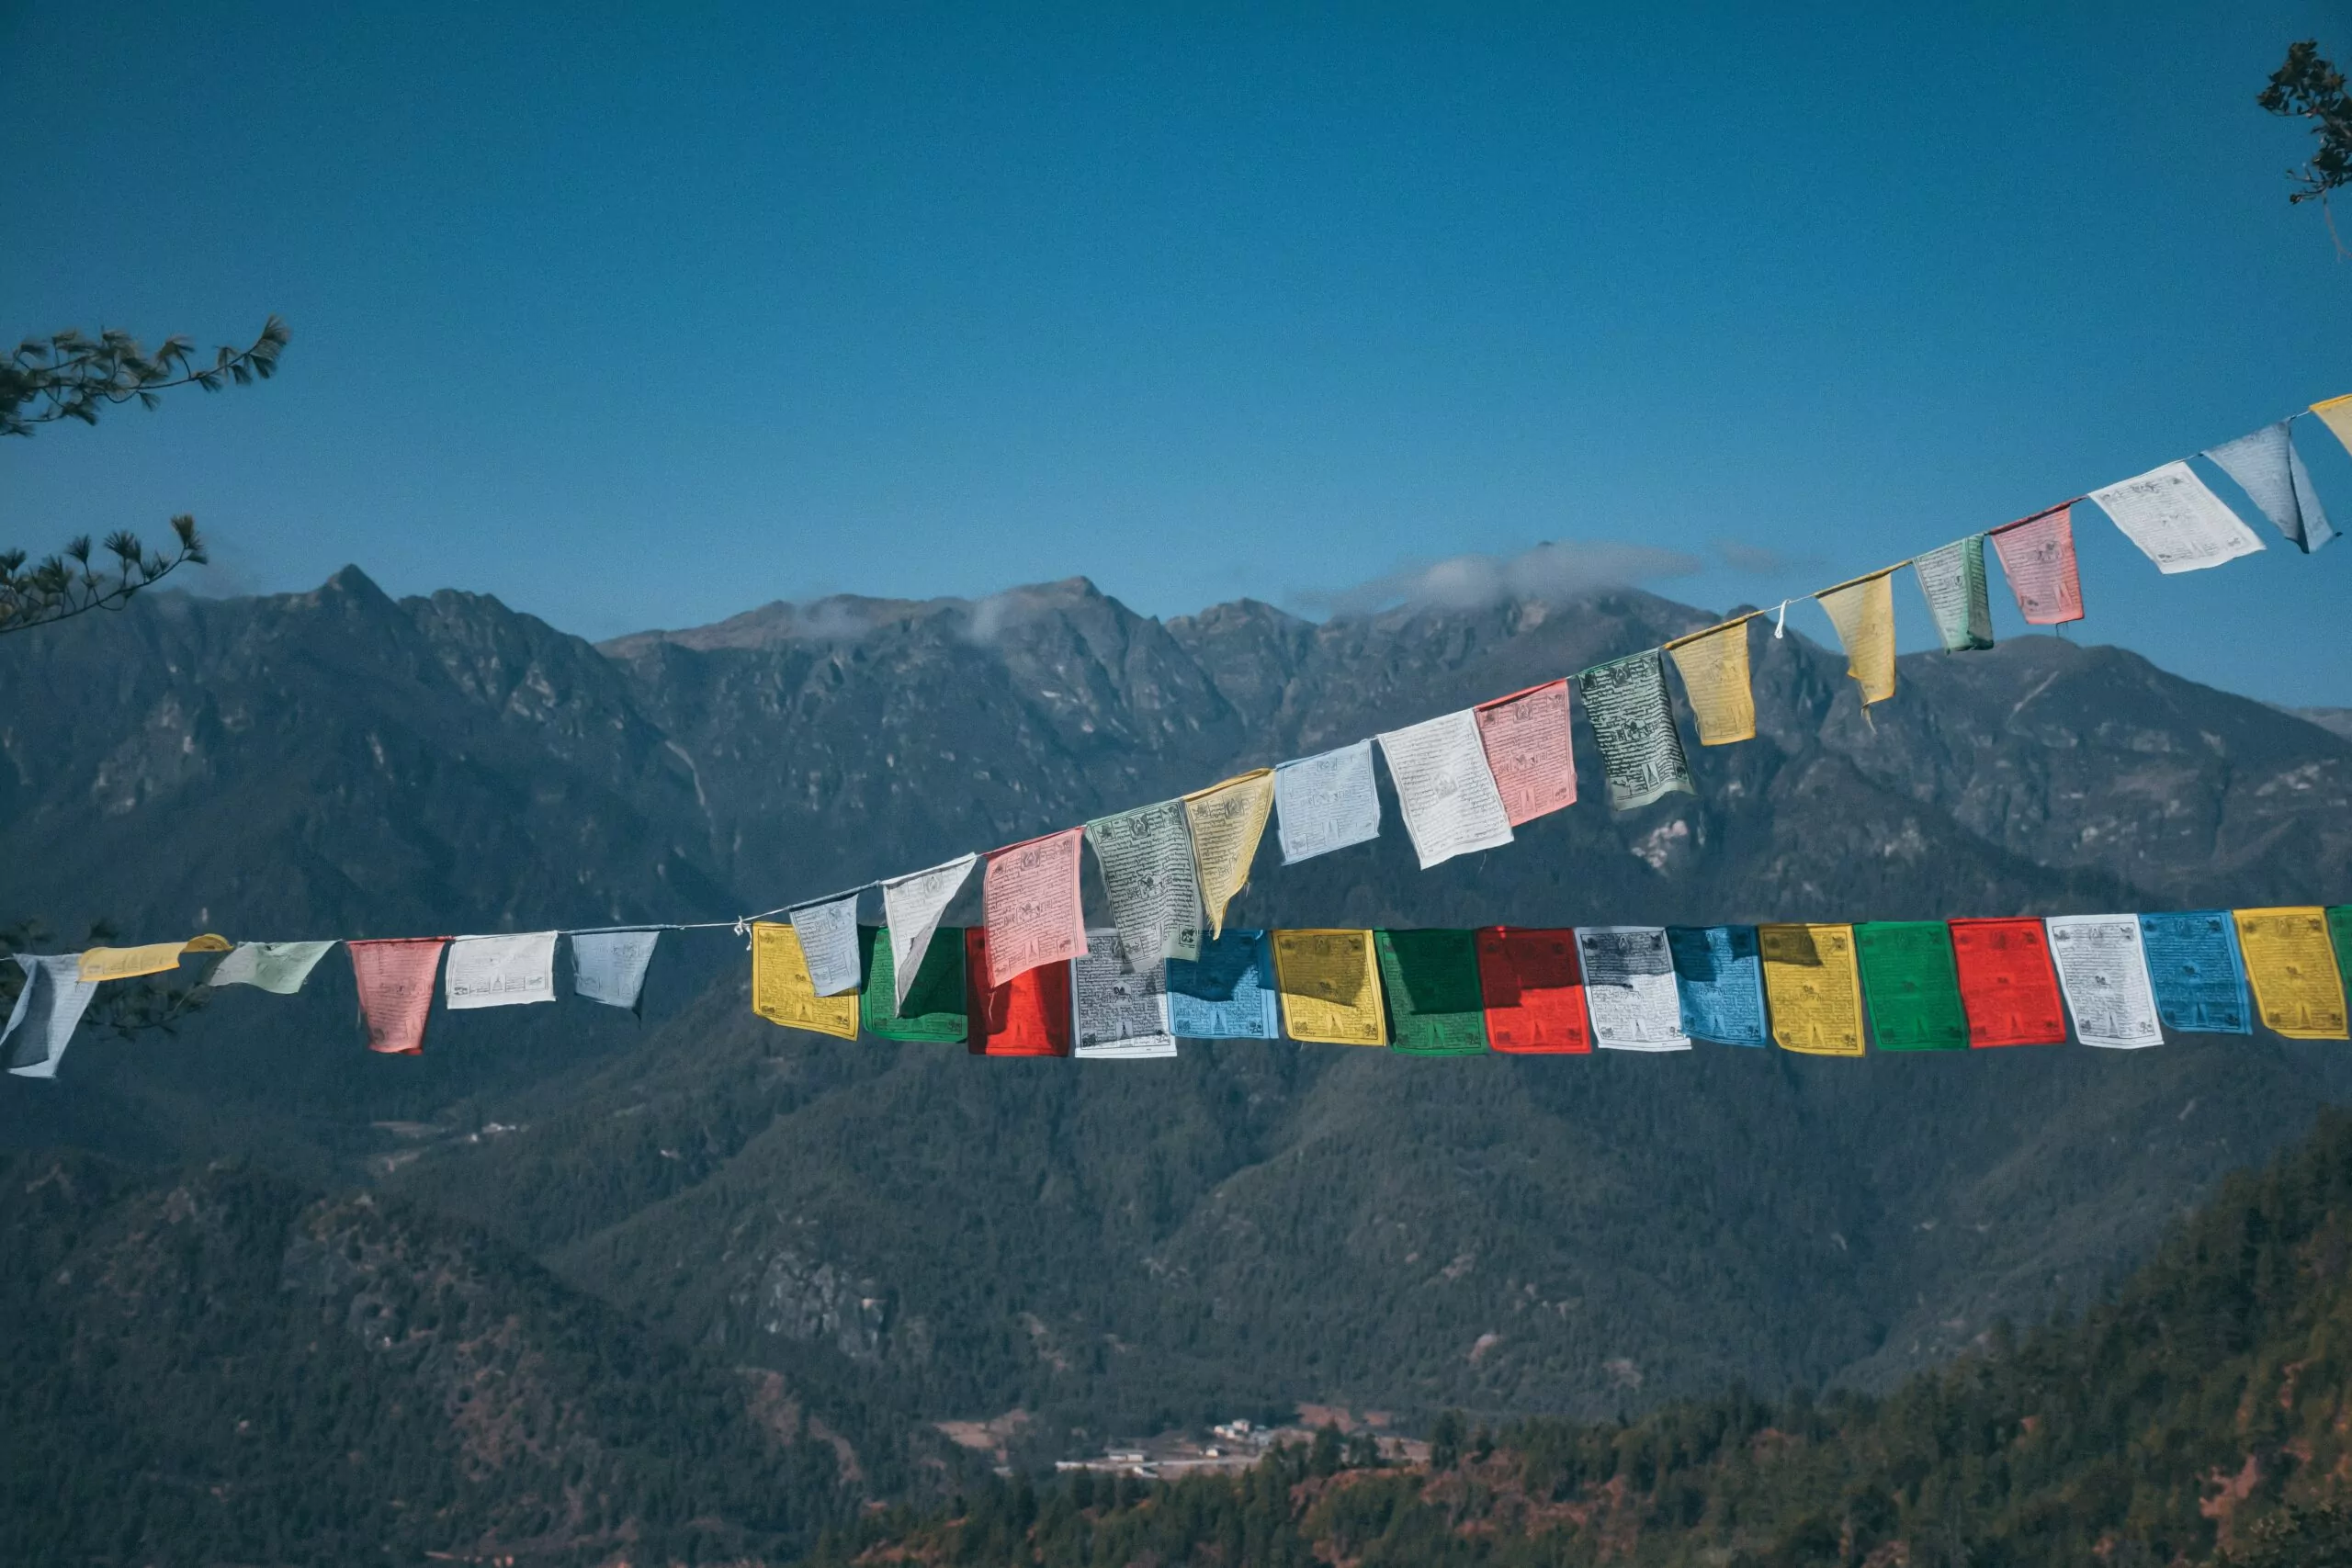 Bandeirinhas coloridas pendurada em um varal. Ao fundo, a Cordilheira do Himalaia, com montanha coberta de neve contrastando com céu azul. Carbono negativo.